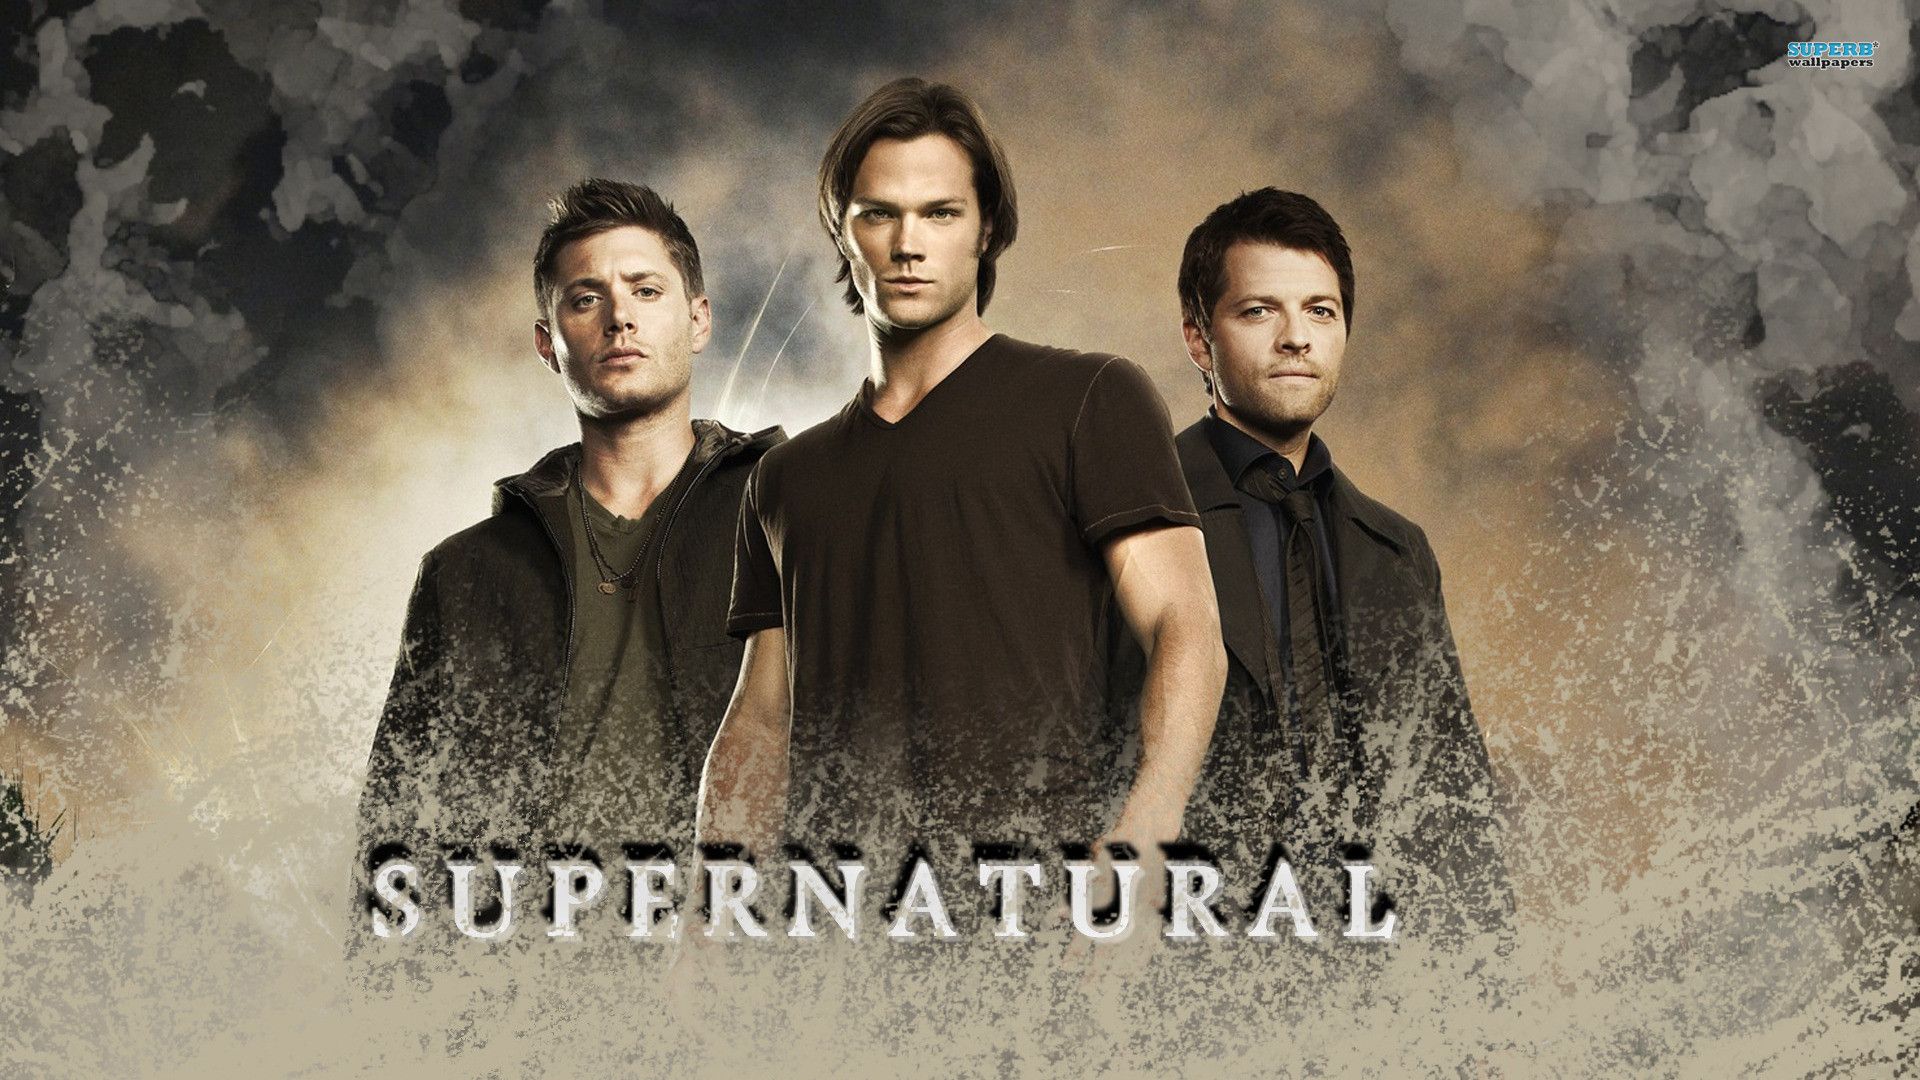 Supernatural Dean Wallpaper High Resolution. Supernatural poster